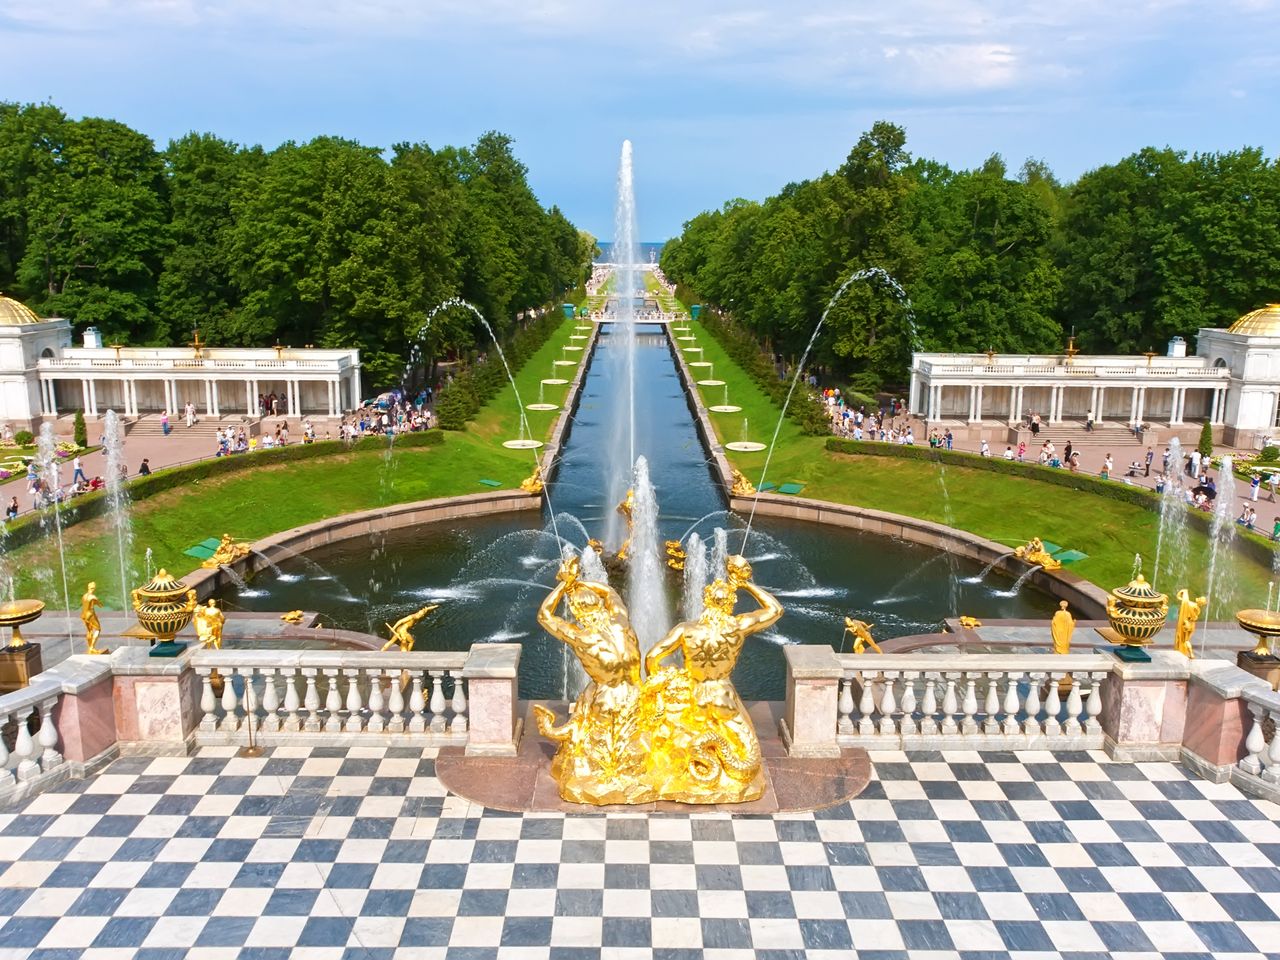 Петергофские чудеса: фонтаны и Большой дворец   | Цена 2250₽, отзывы, описание экскурсии